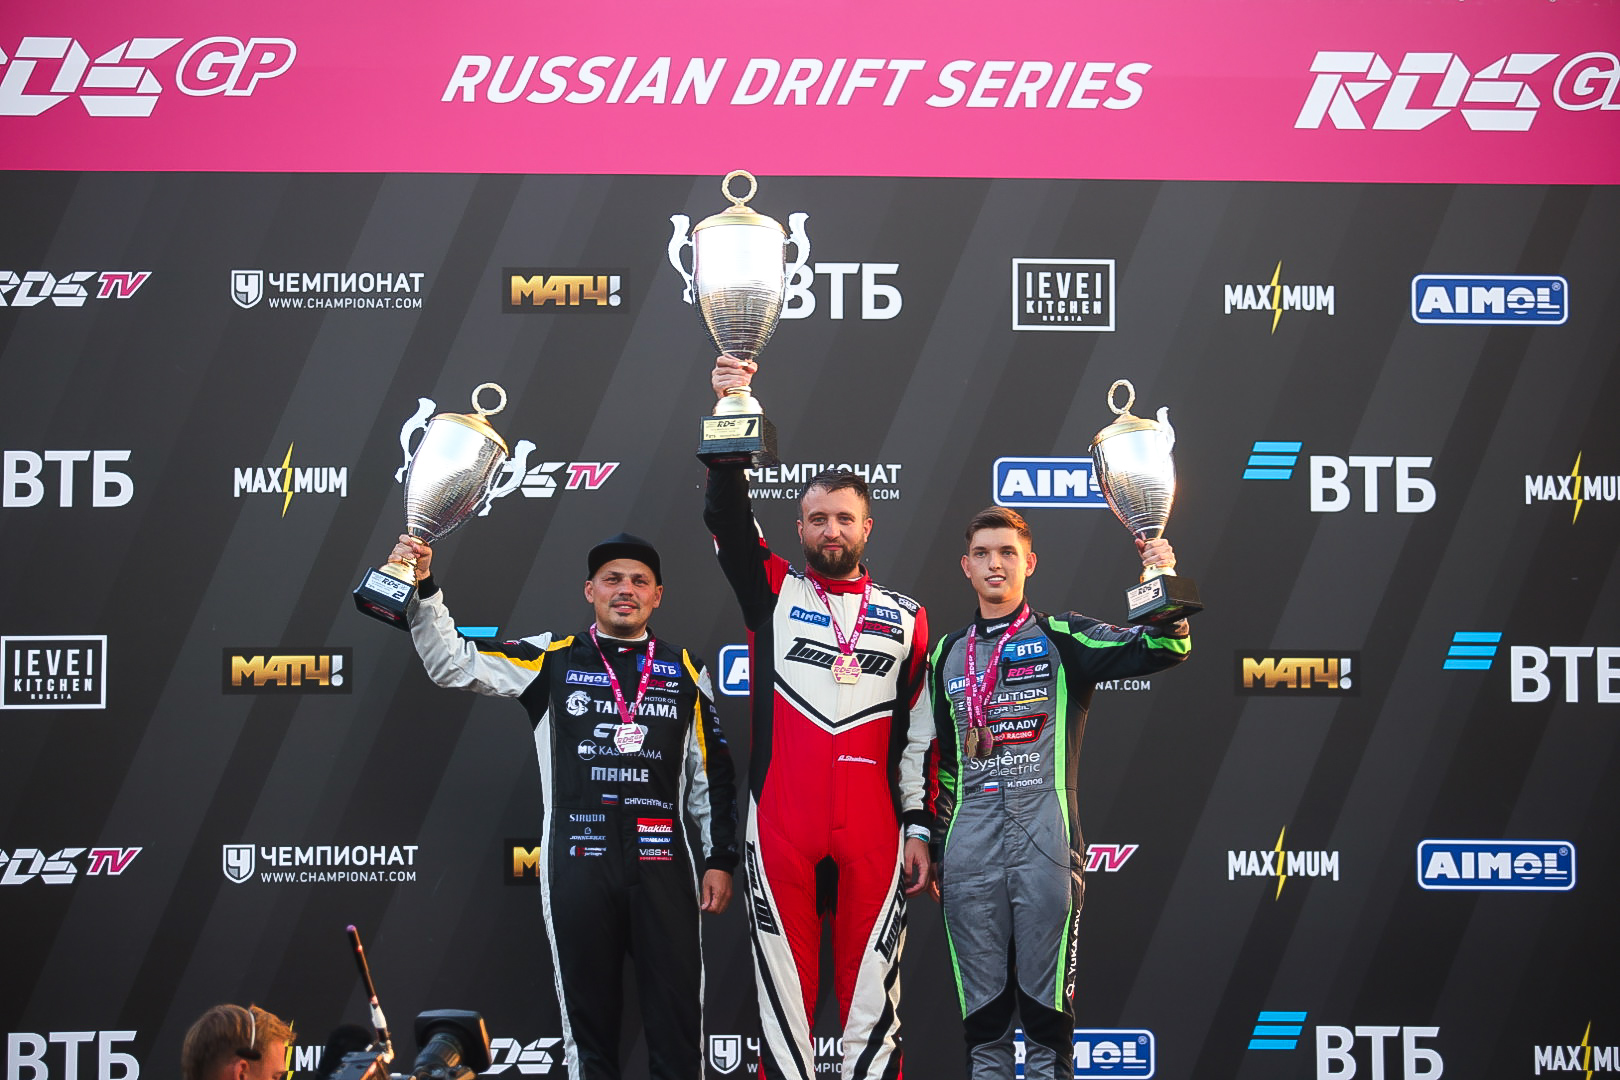 Дебютант Артём Шабанов впервые в карьере выиграл этап RDS GP 